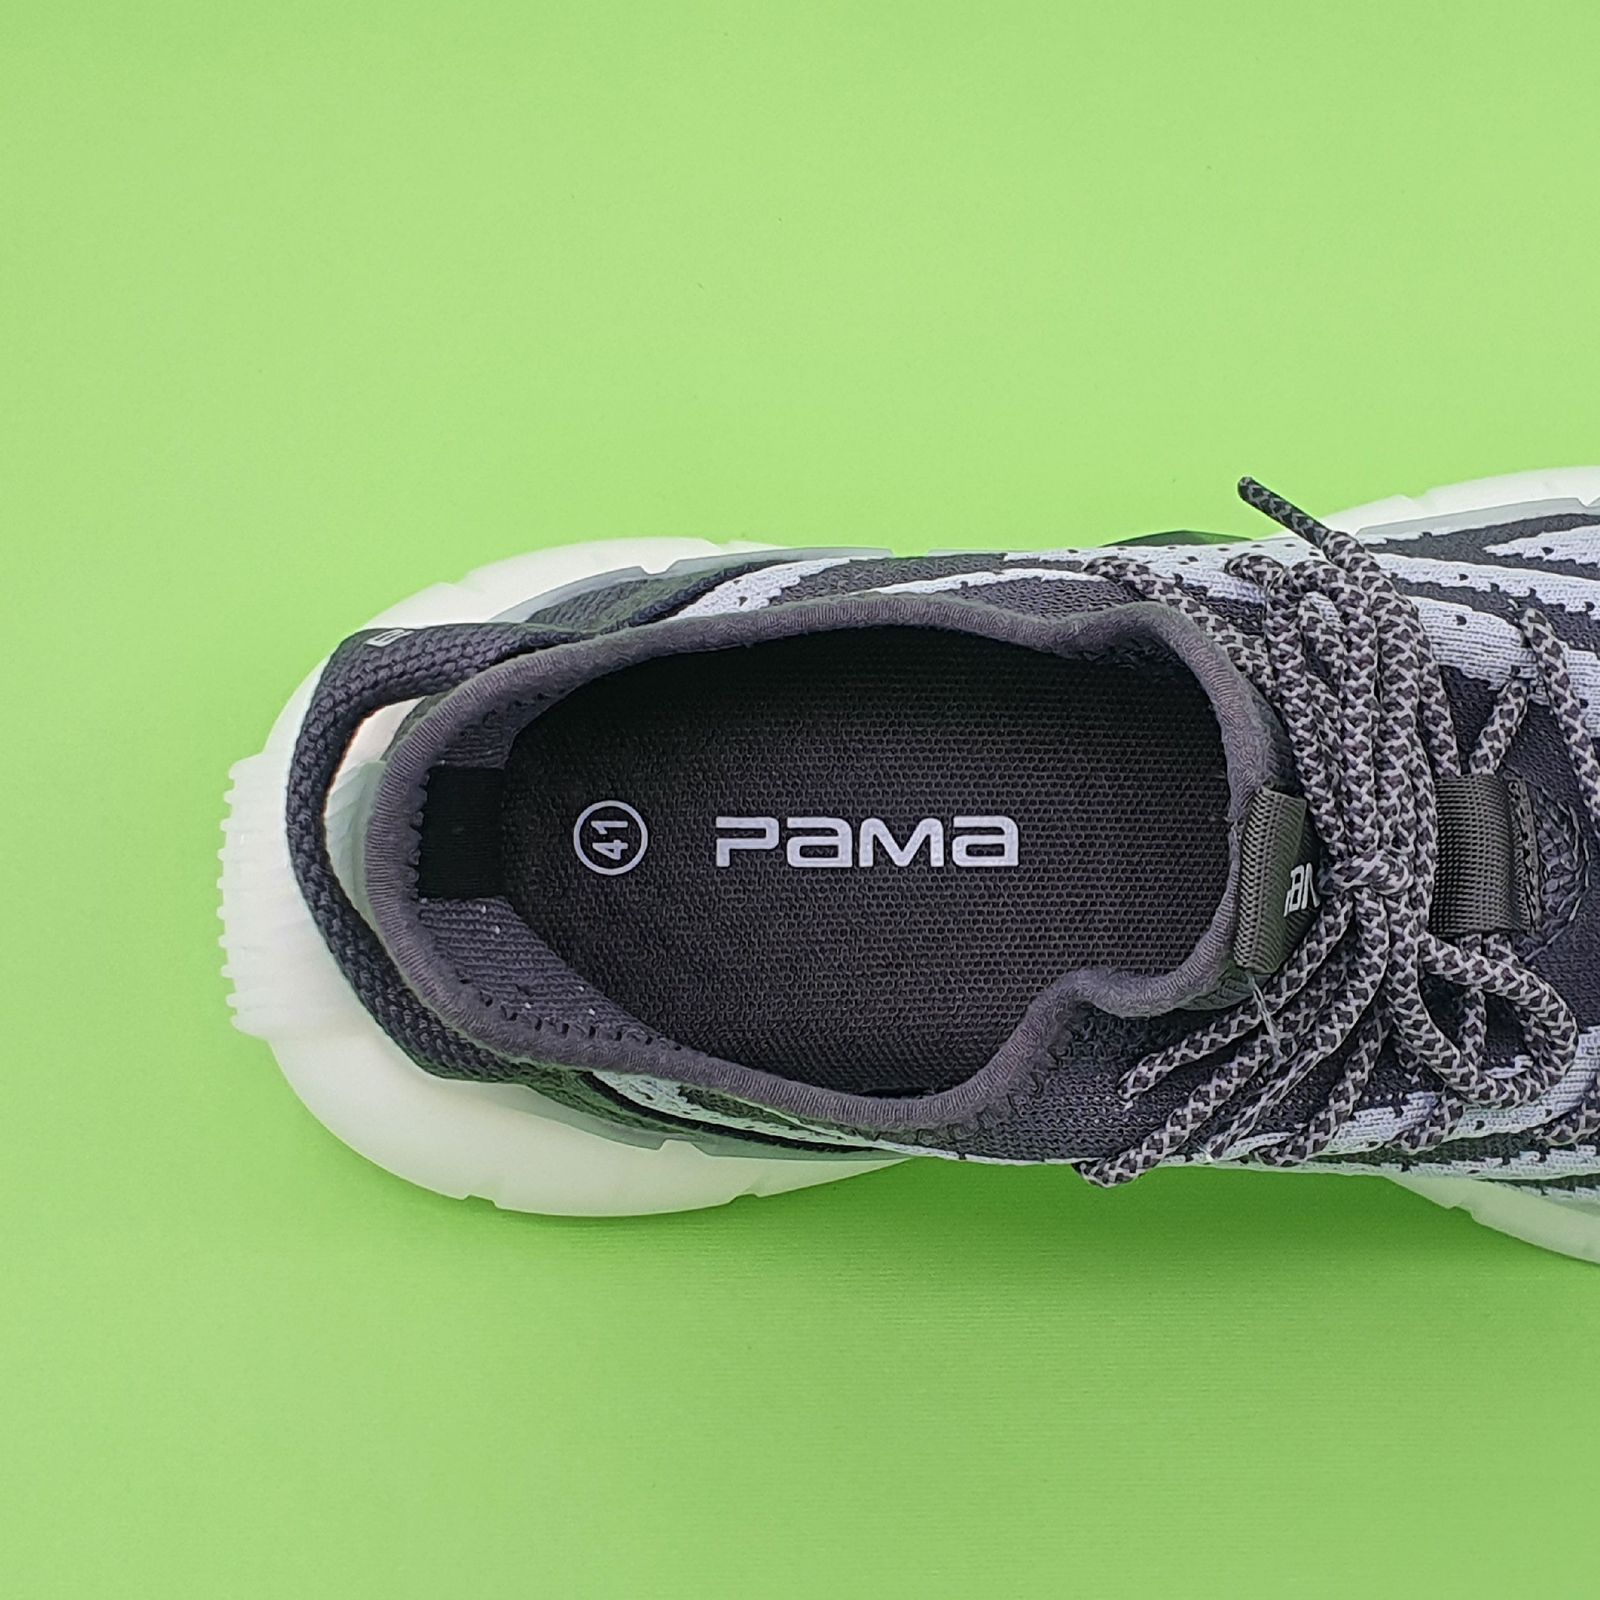 کفش پیاده روی مردانه پاما مدل VR-821 کد G1592 -  - 8